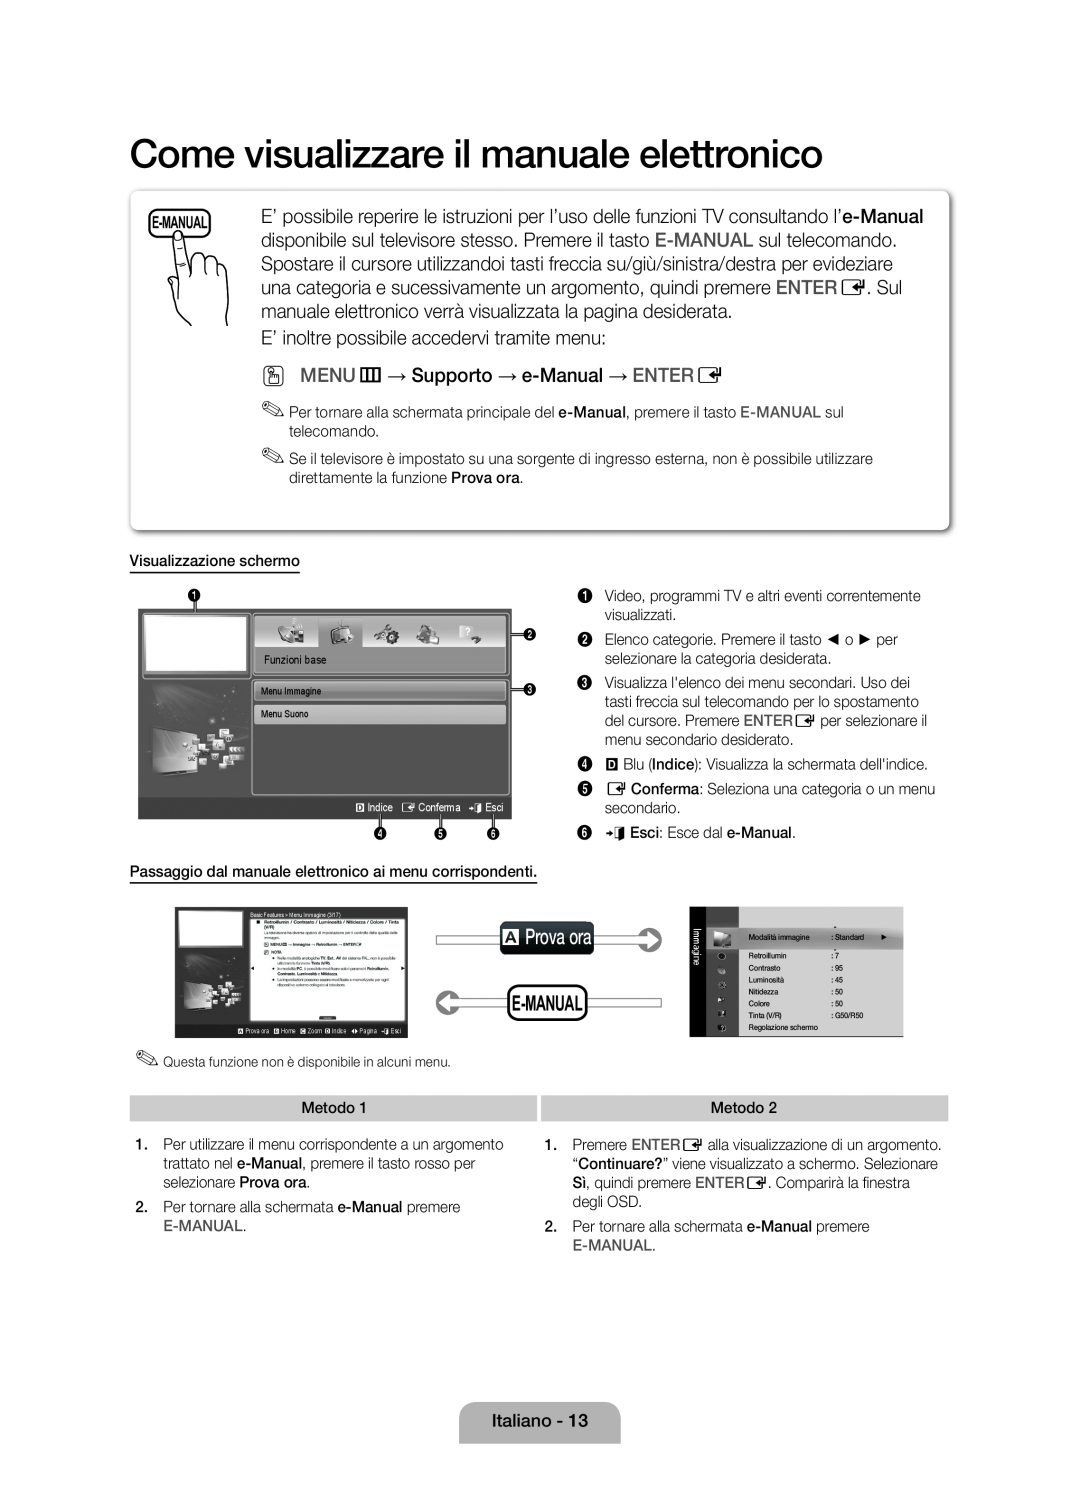 Samsung UE40D5000PWXXH Come visualizzare il manuale elettronico, aProva ora, E’ inoltre possibile accedervi tramite menu 